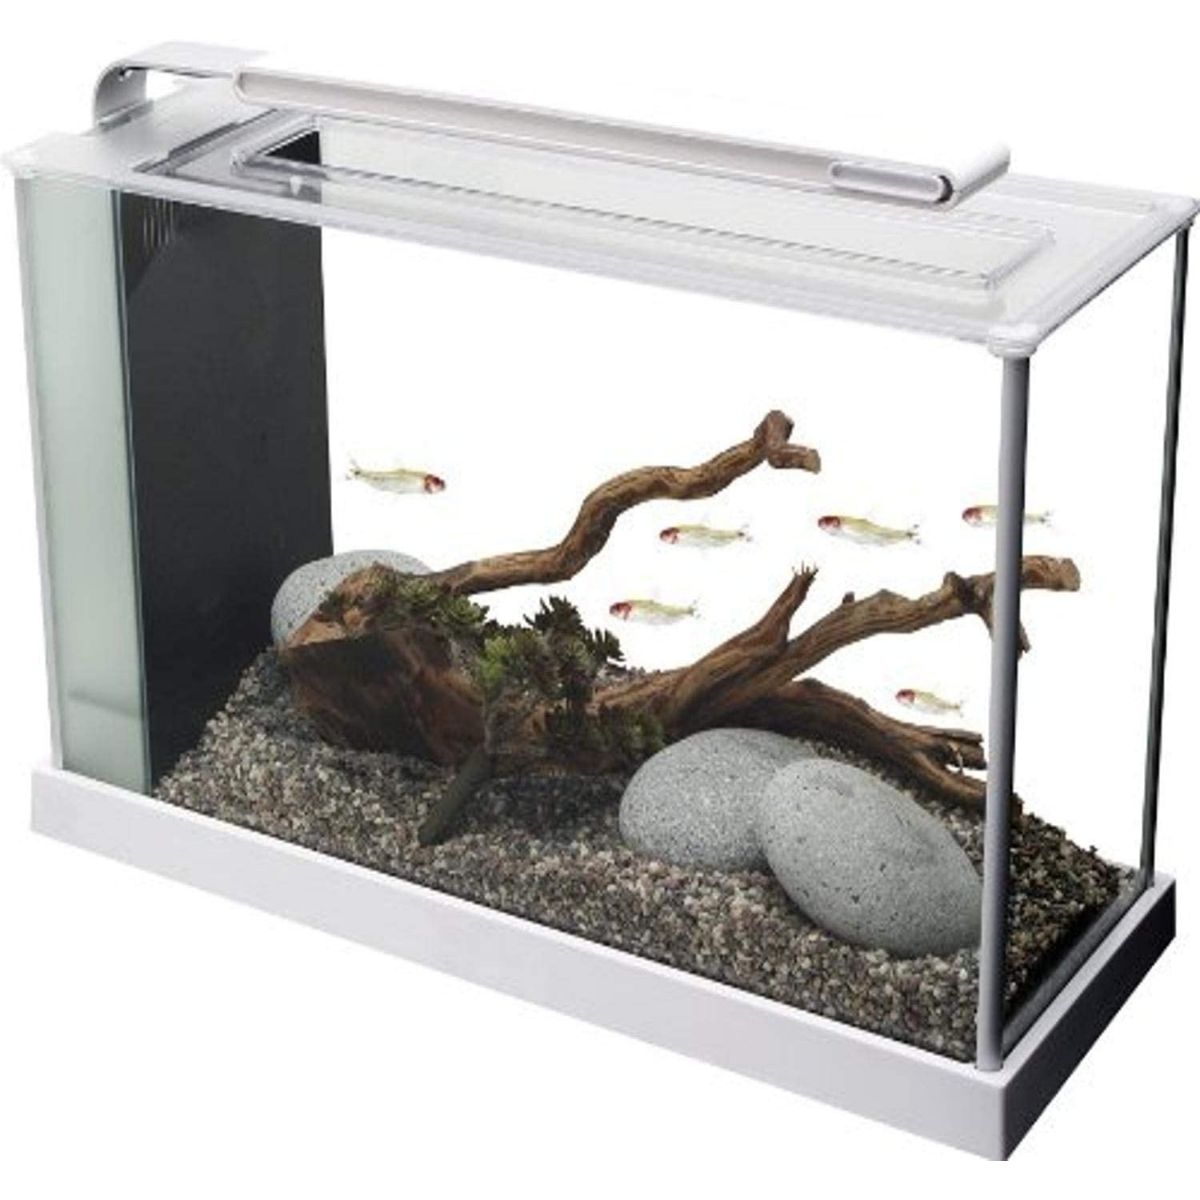 Best Fish Tank Fluval Spec V Aquarium